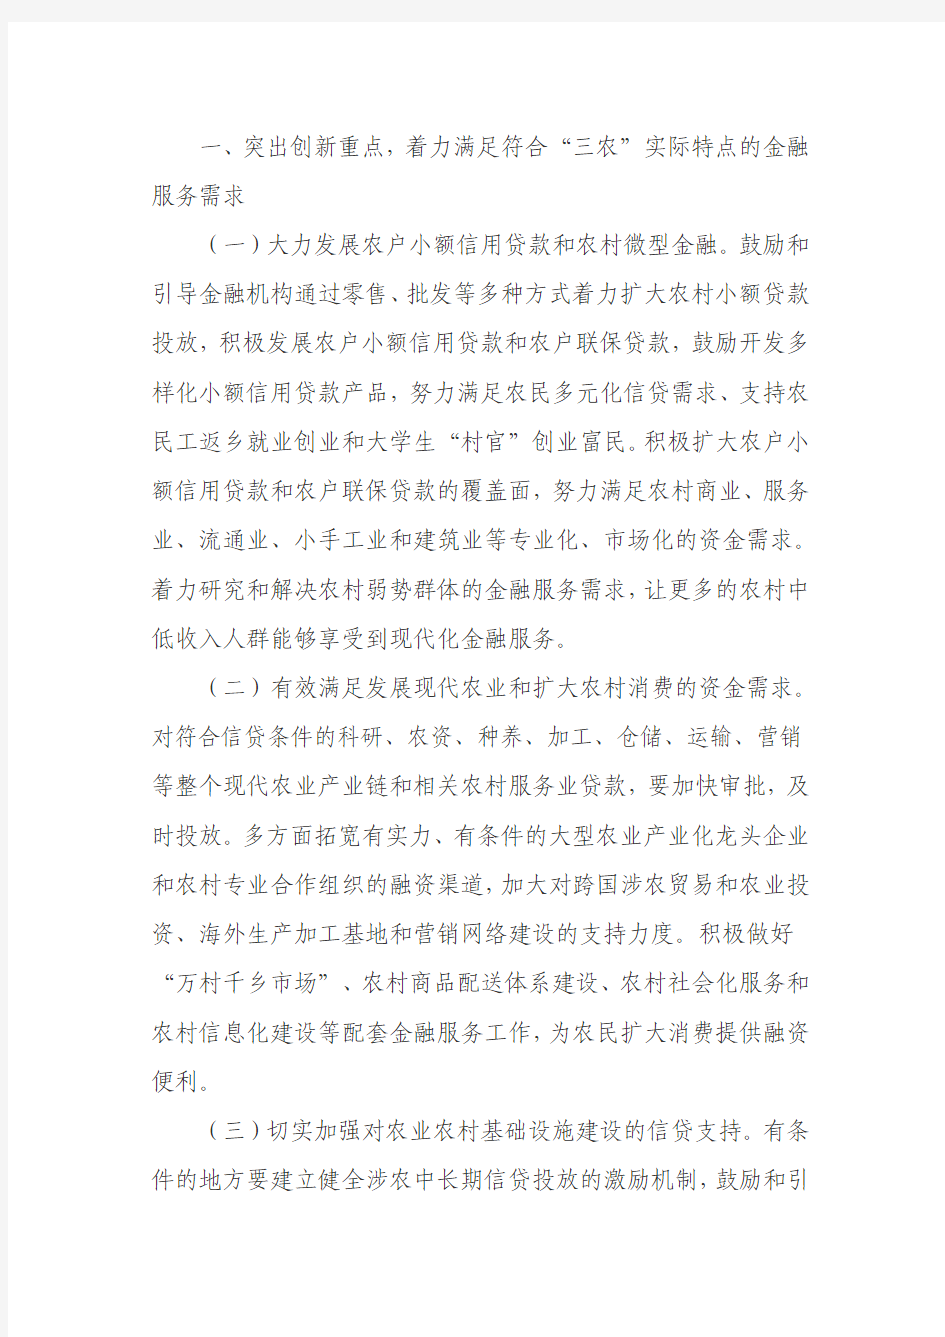 中国人民银行中国银监会 中国证监会 中国保监会关于全面推进农村金融产品和服务方式创新的指导意见